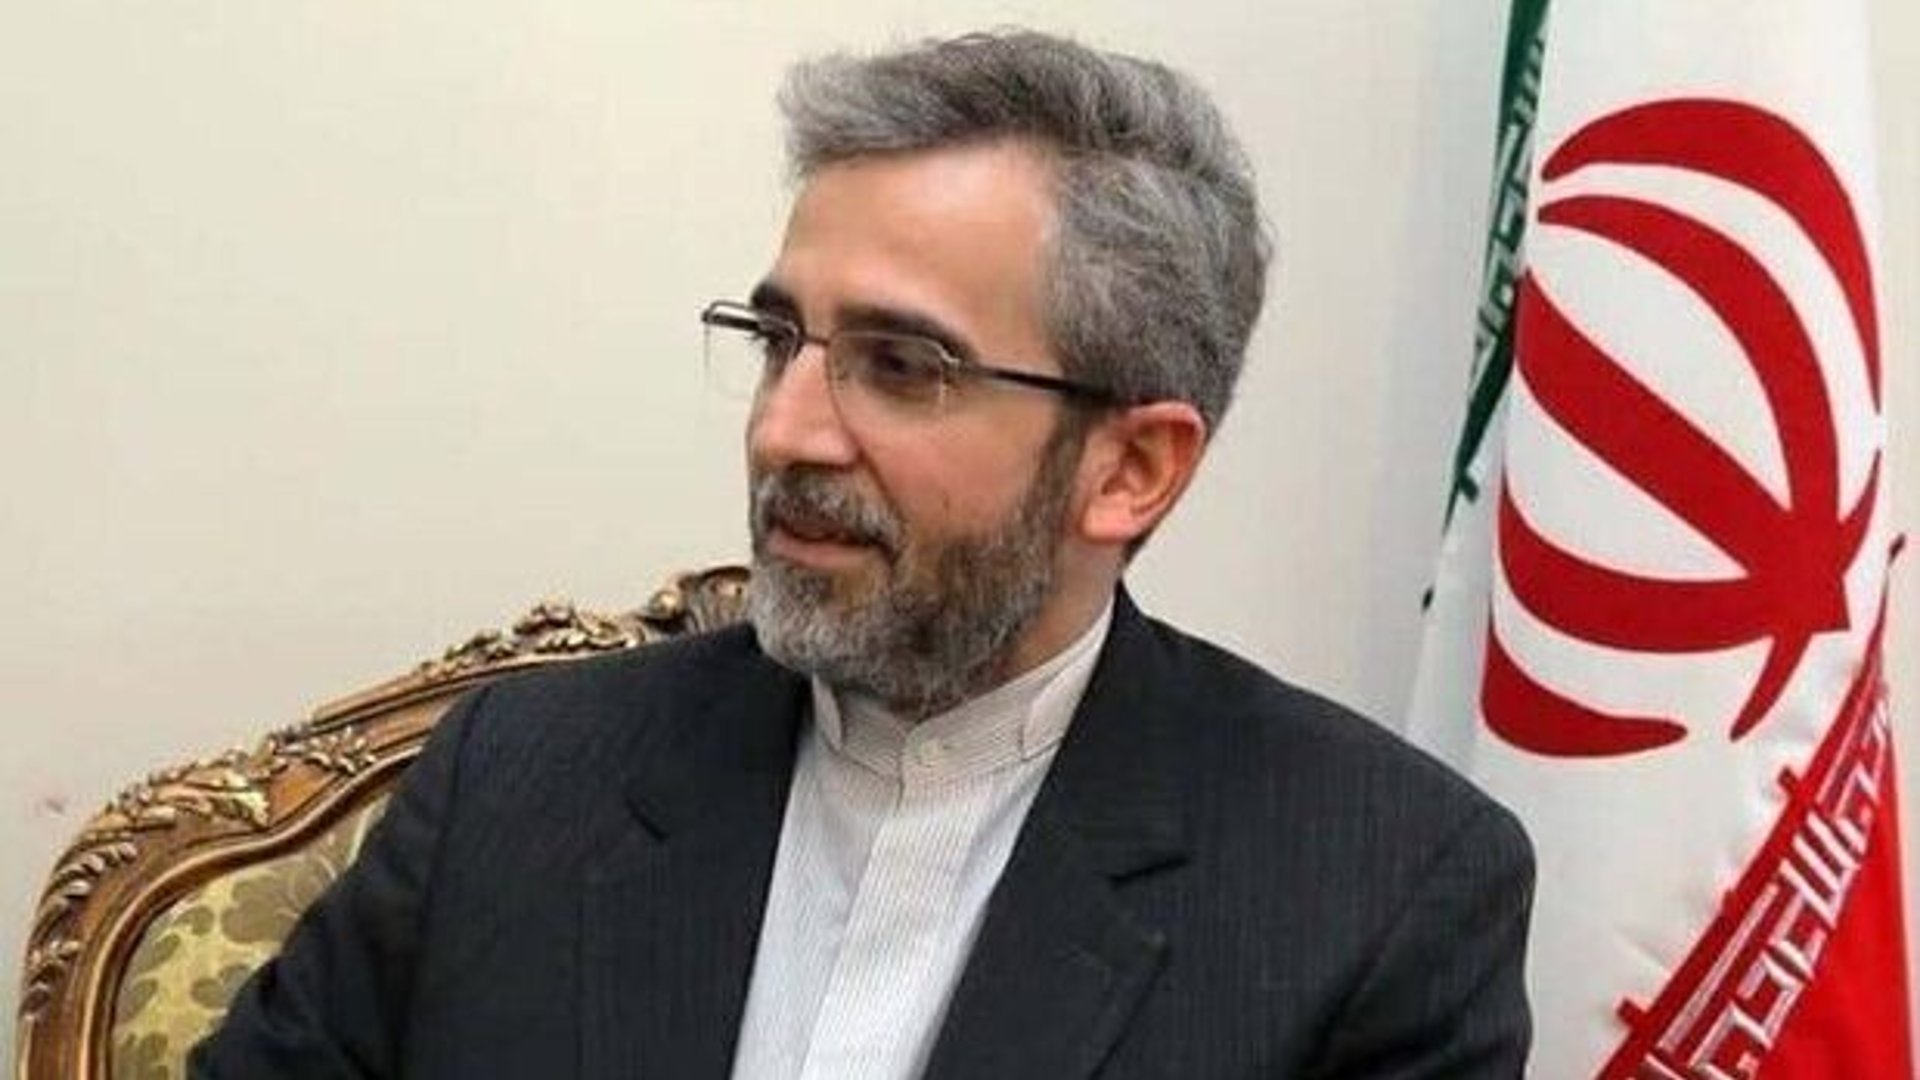 الحكومة الإيرانية تعيّن علي باقري وزيراً للخارجية خلفاً لعبد اللهيان